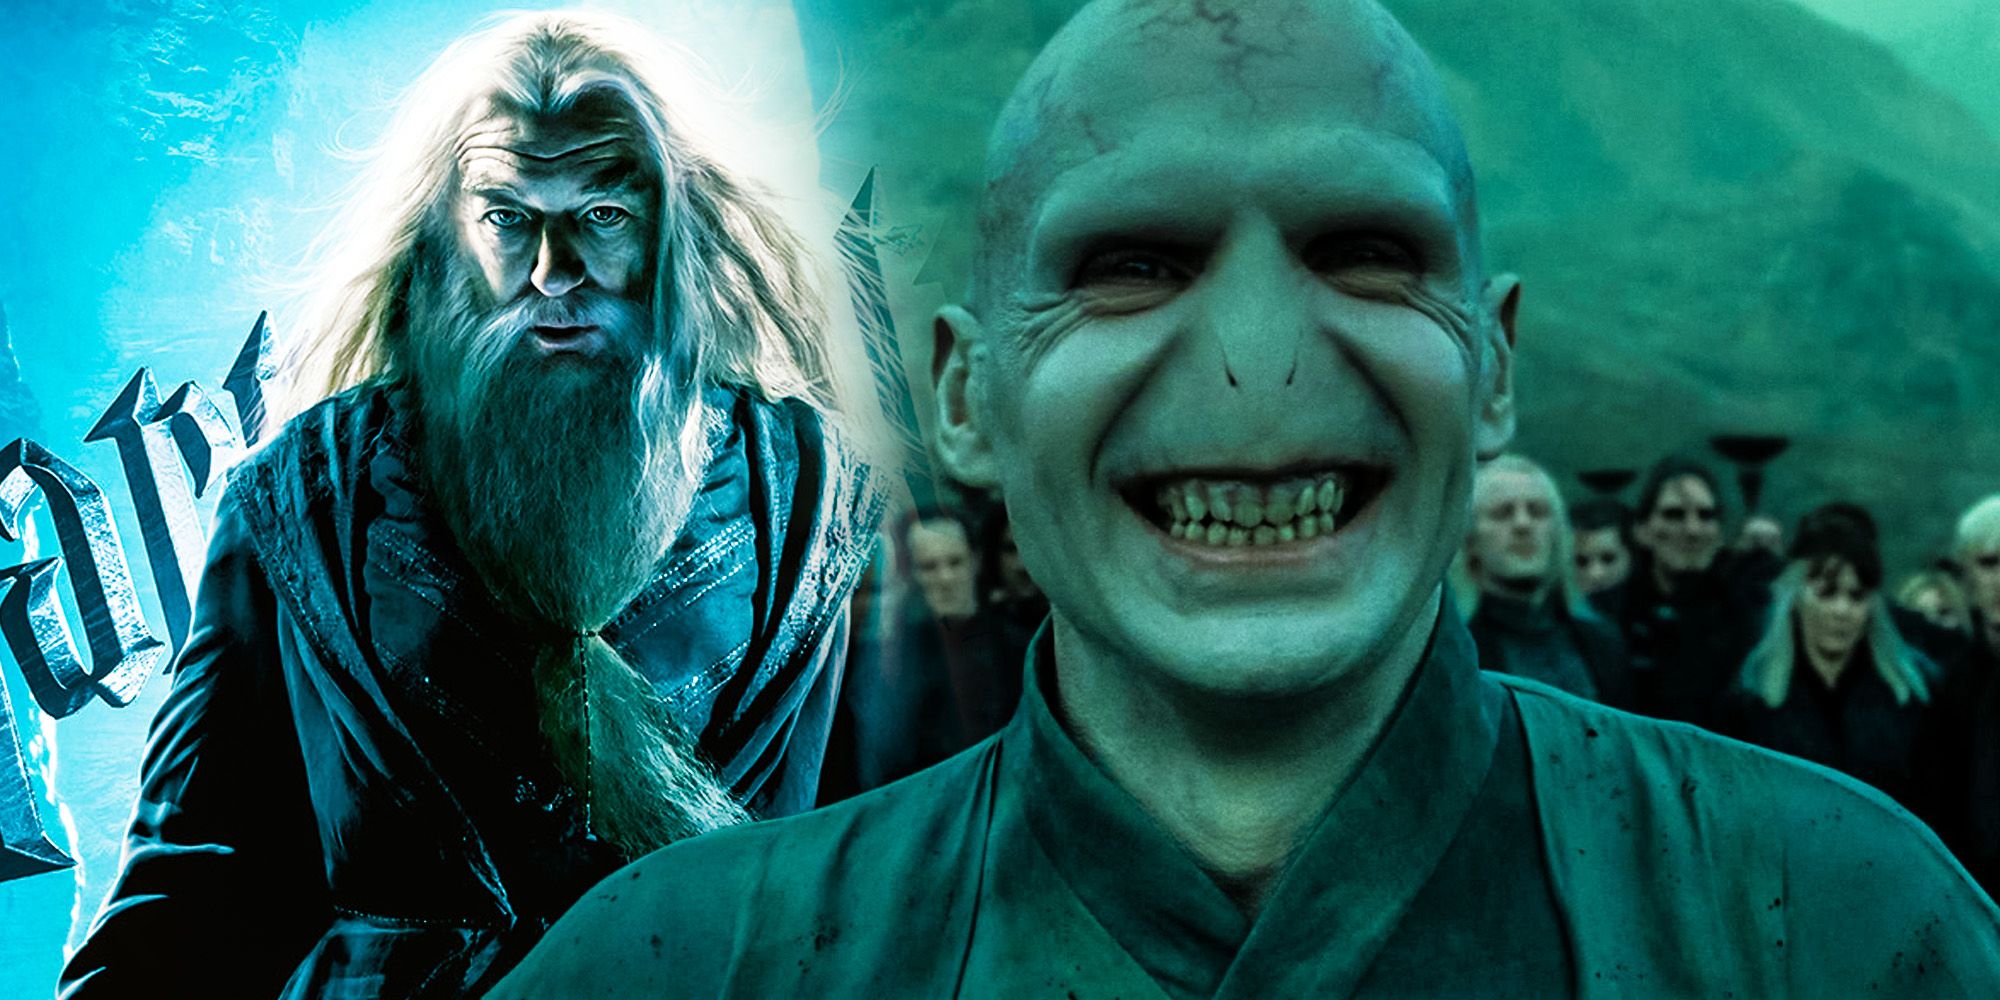 Evil Dumbledore vs Voldemort